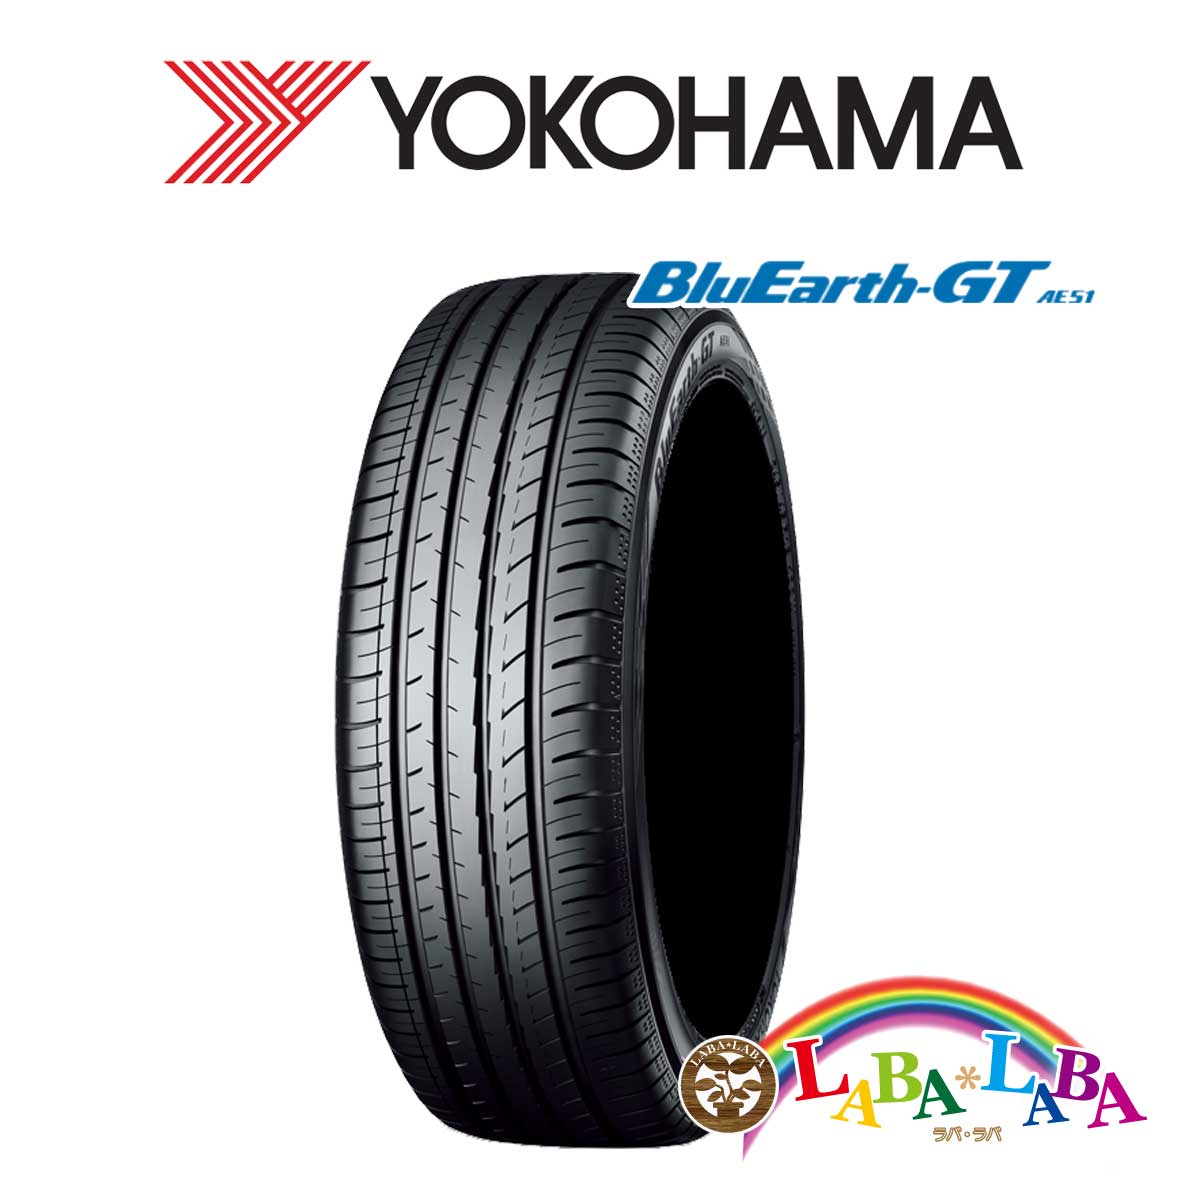 魅力の 驚きの価格 ２本以上送料無料 国産タイヤ サマータイヤ 新品 タイヤのみ YOKOHAMA ヨコハマ BluEarth-GT ブルーアース AE51 195 55R16 87V iis.uj.ac.za iis.uj.ac.za